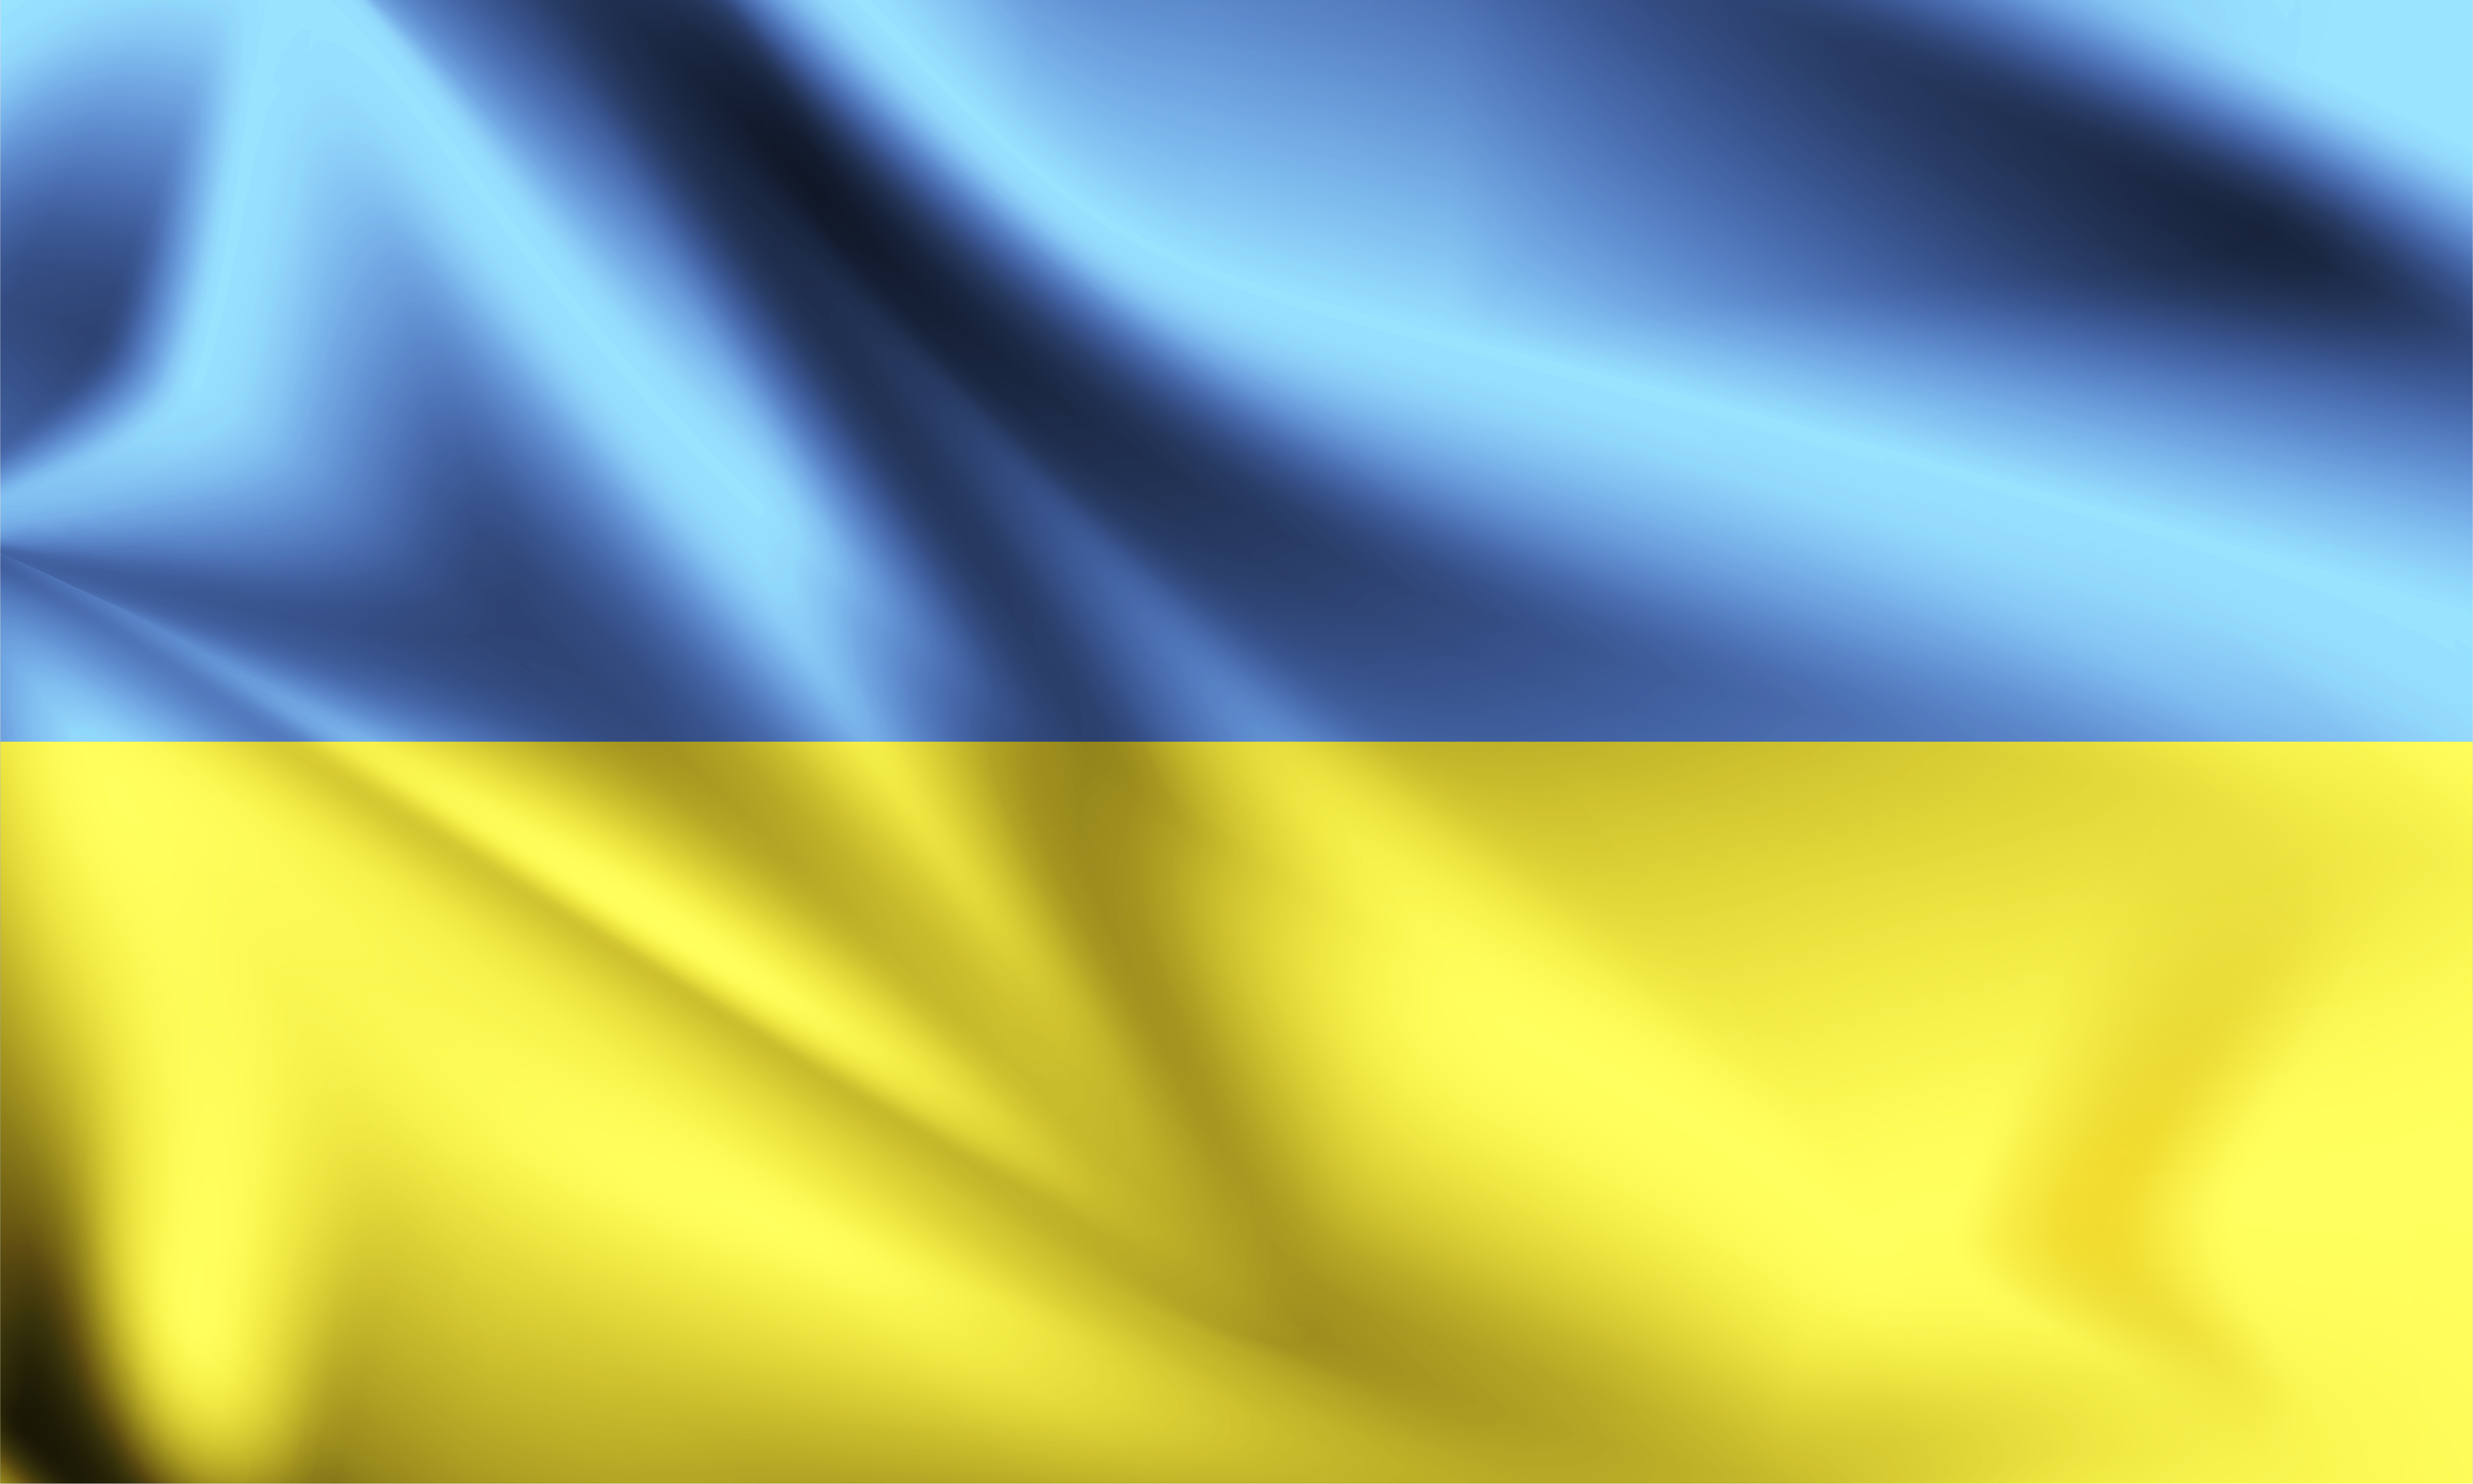 ukraine-3d-flag-with-folds-vector.jpg